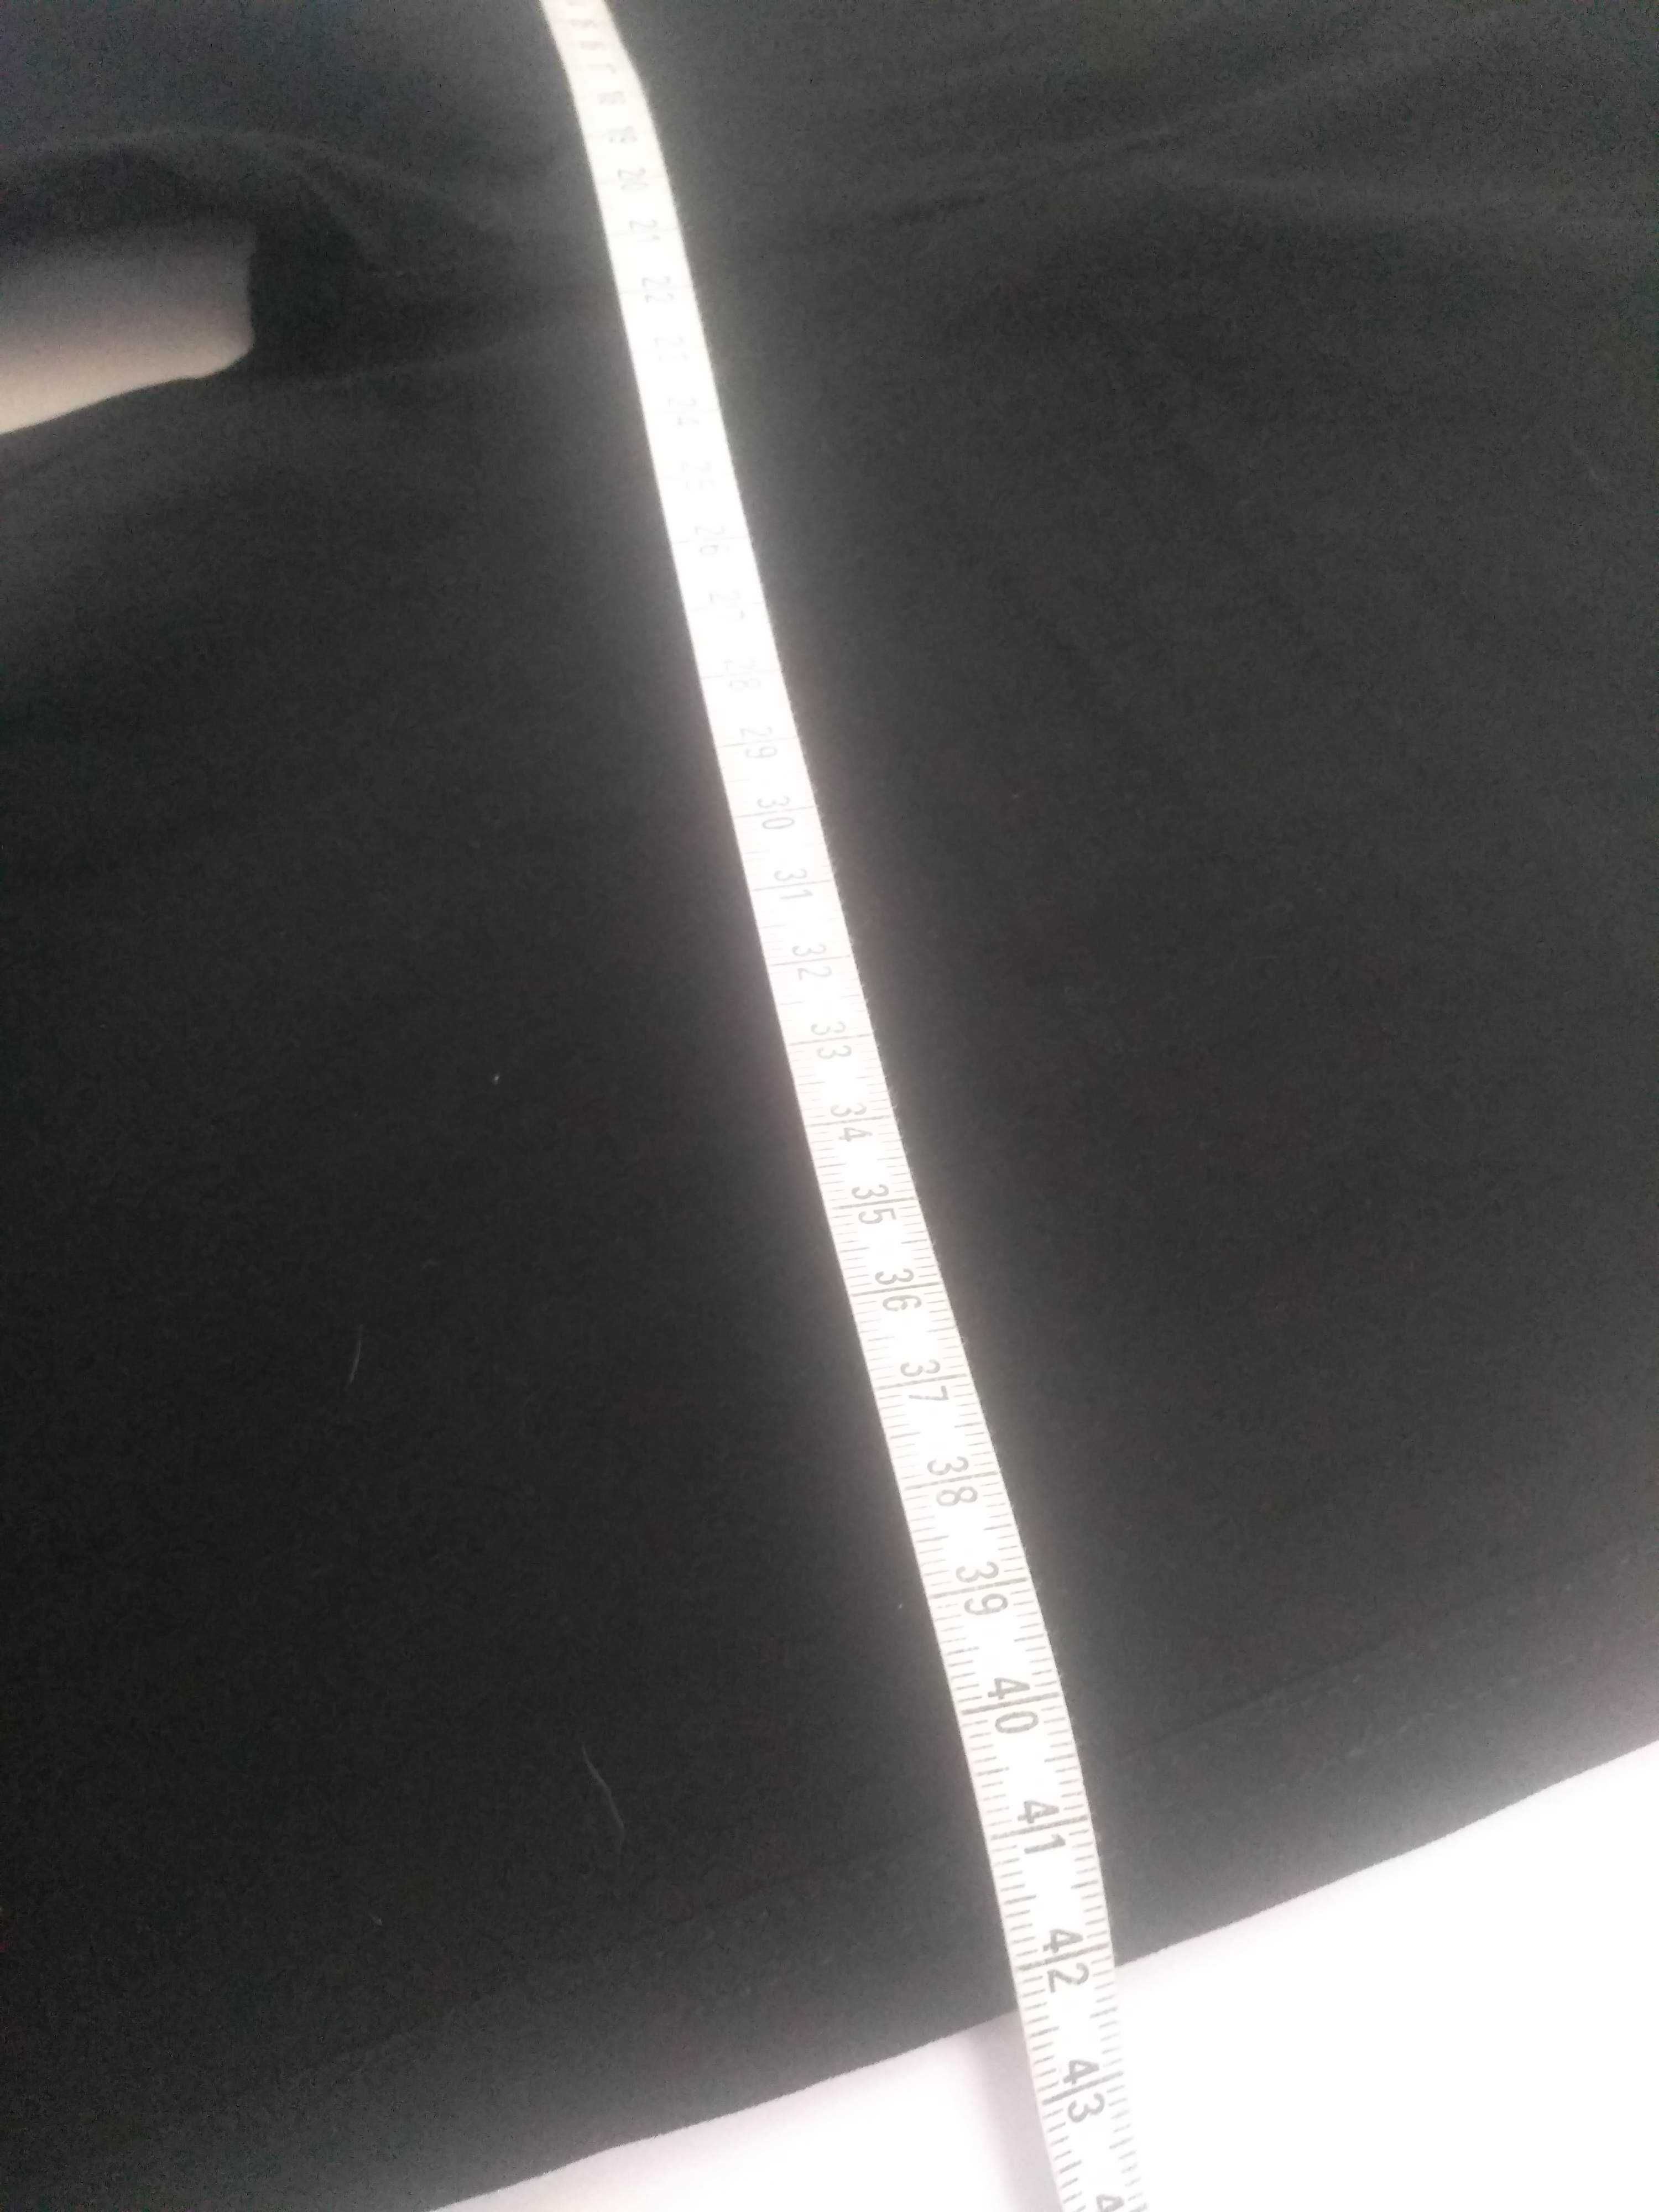 Eleganckie czarne spodnie elastyczne 34 36 xs s nowe